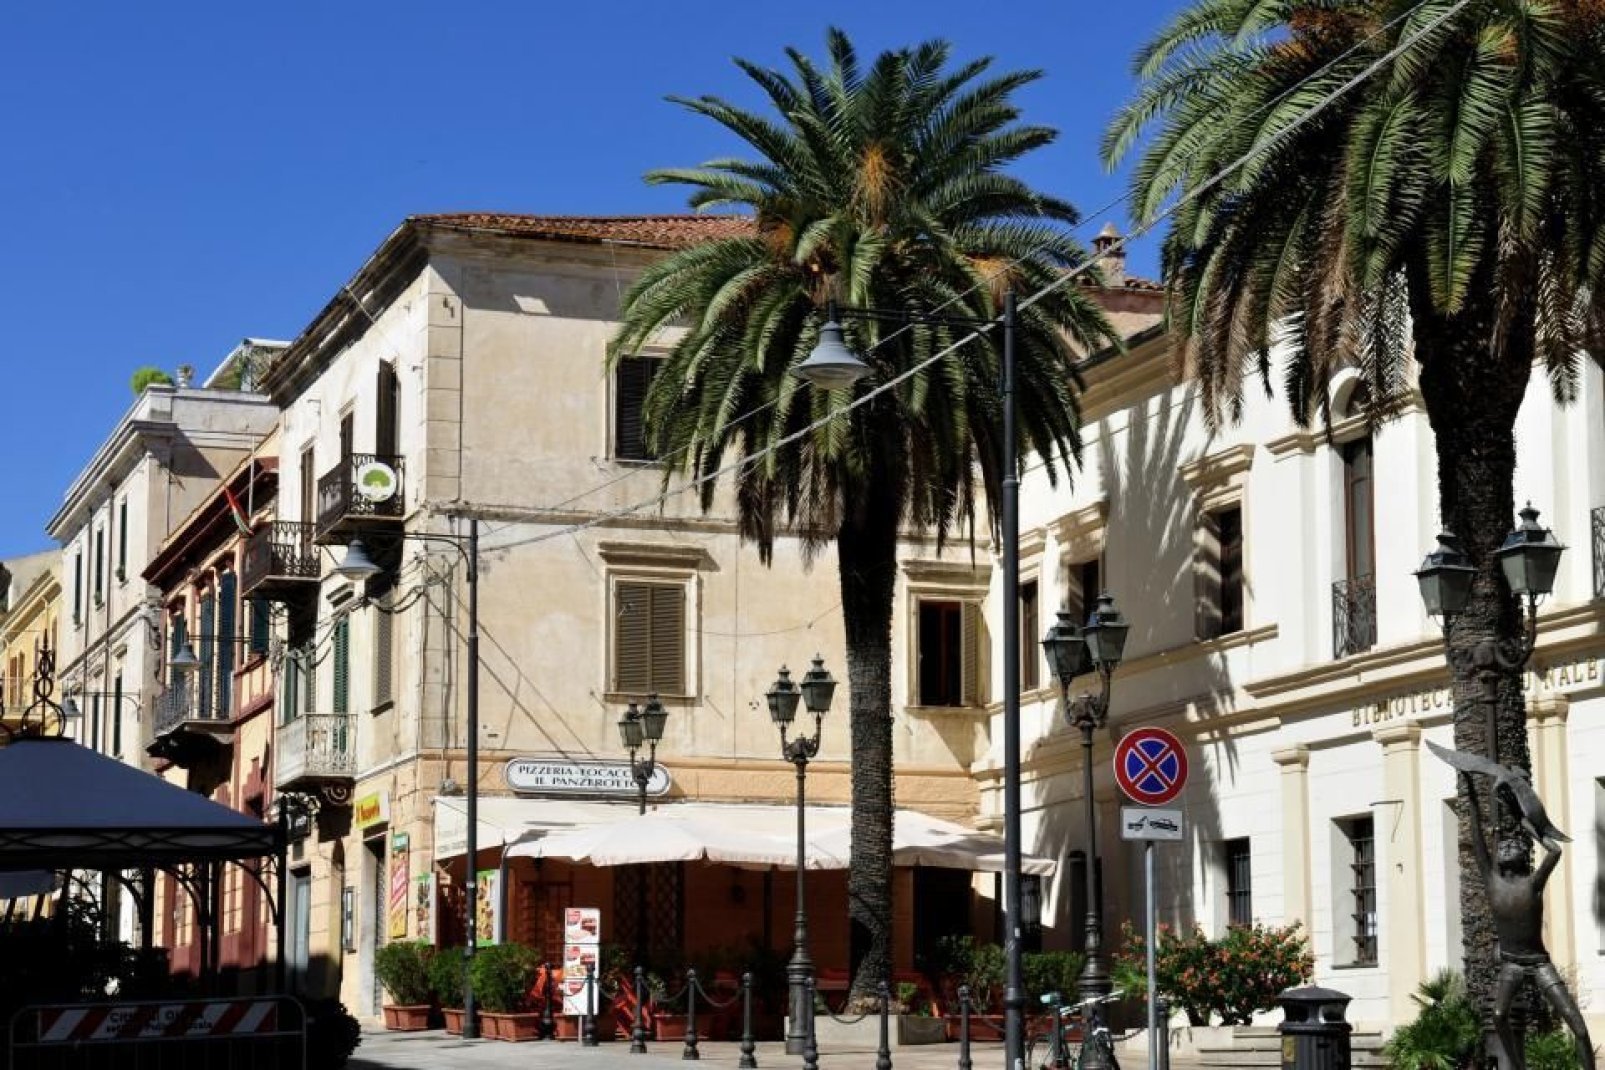 Der Corso Umberto I ist die Hauptverkehrsader im Stadtzentrum von Olbia. Hier findet man zahlreiche Geschäfte und Restaurants.